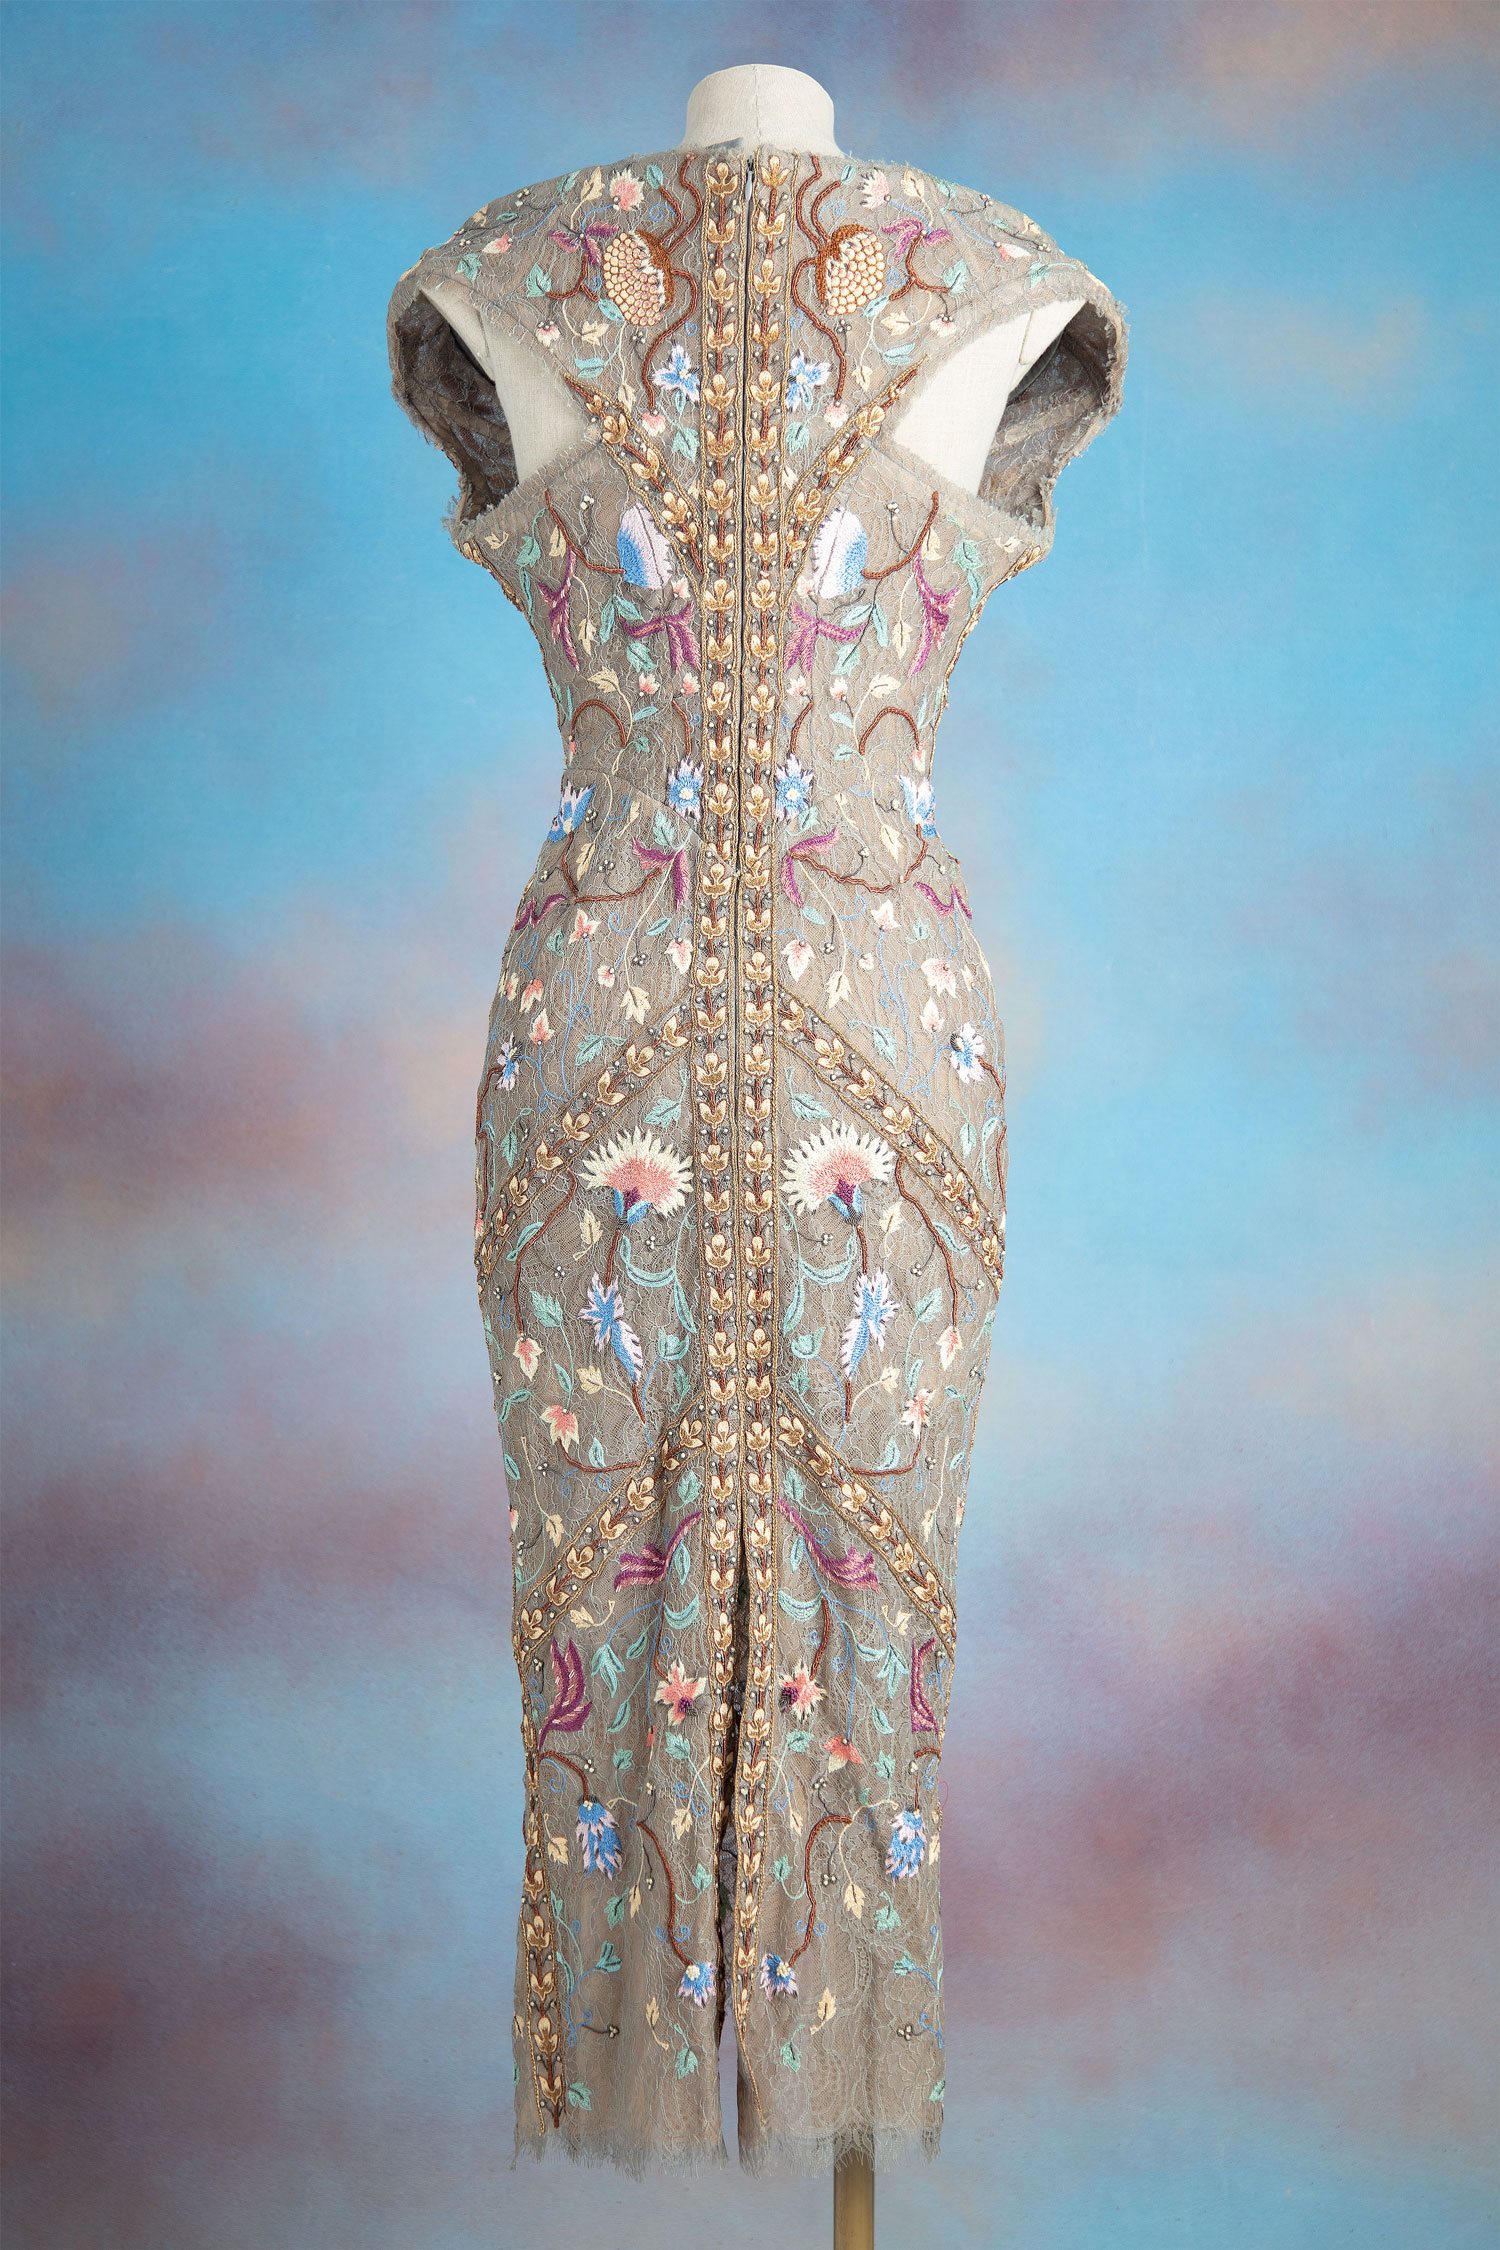 La Court Corset Dress, Vivienne Westwood Gold Label Spring-Summer 2012 ‘War & Peace’ Collection